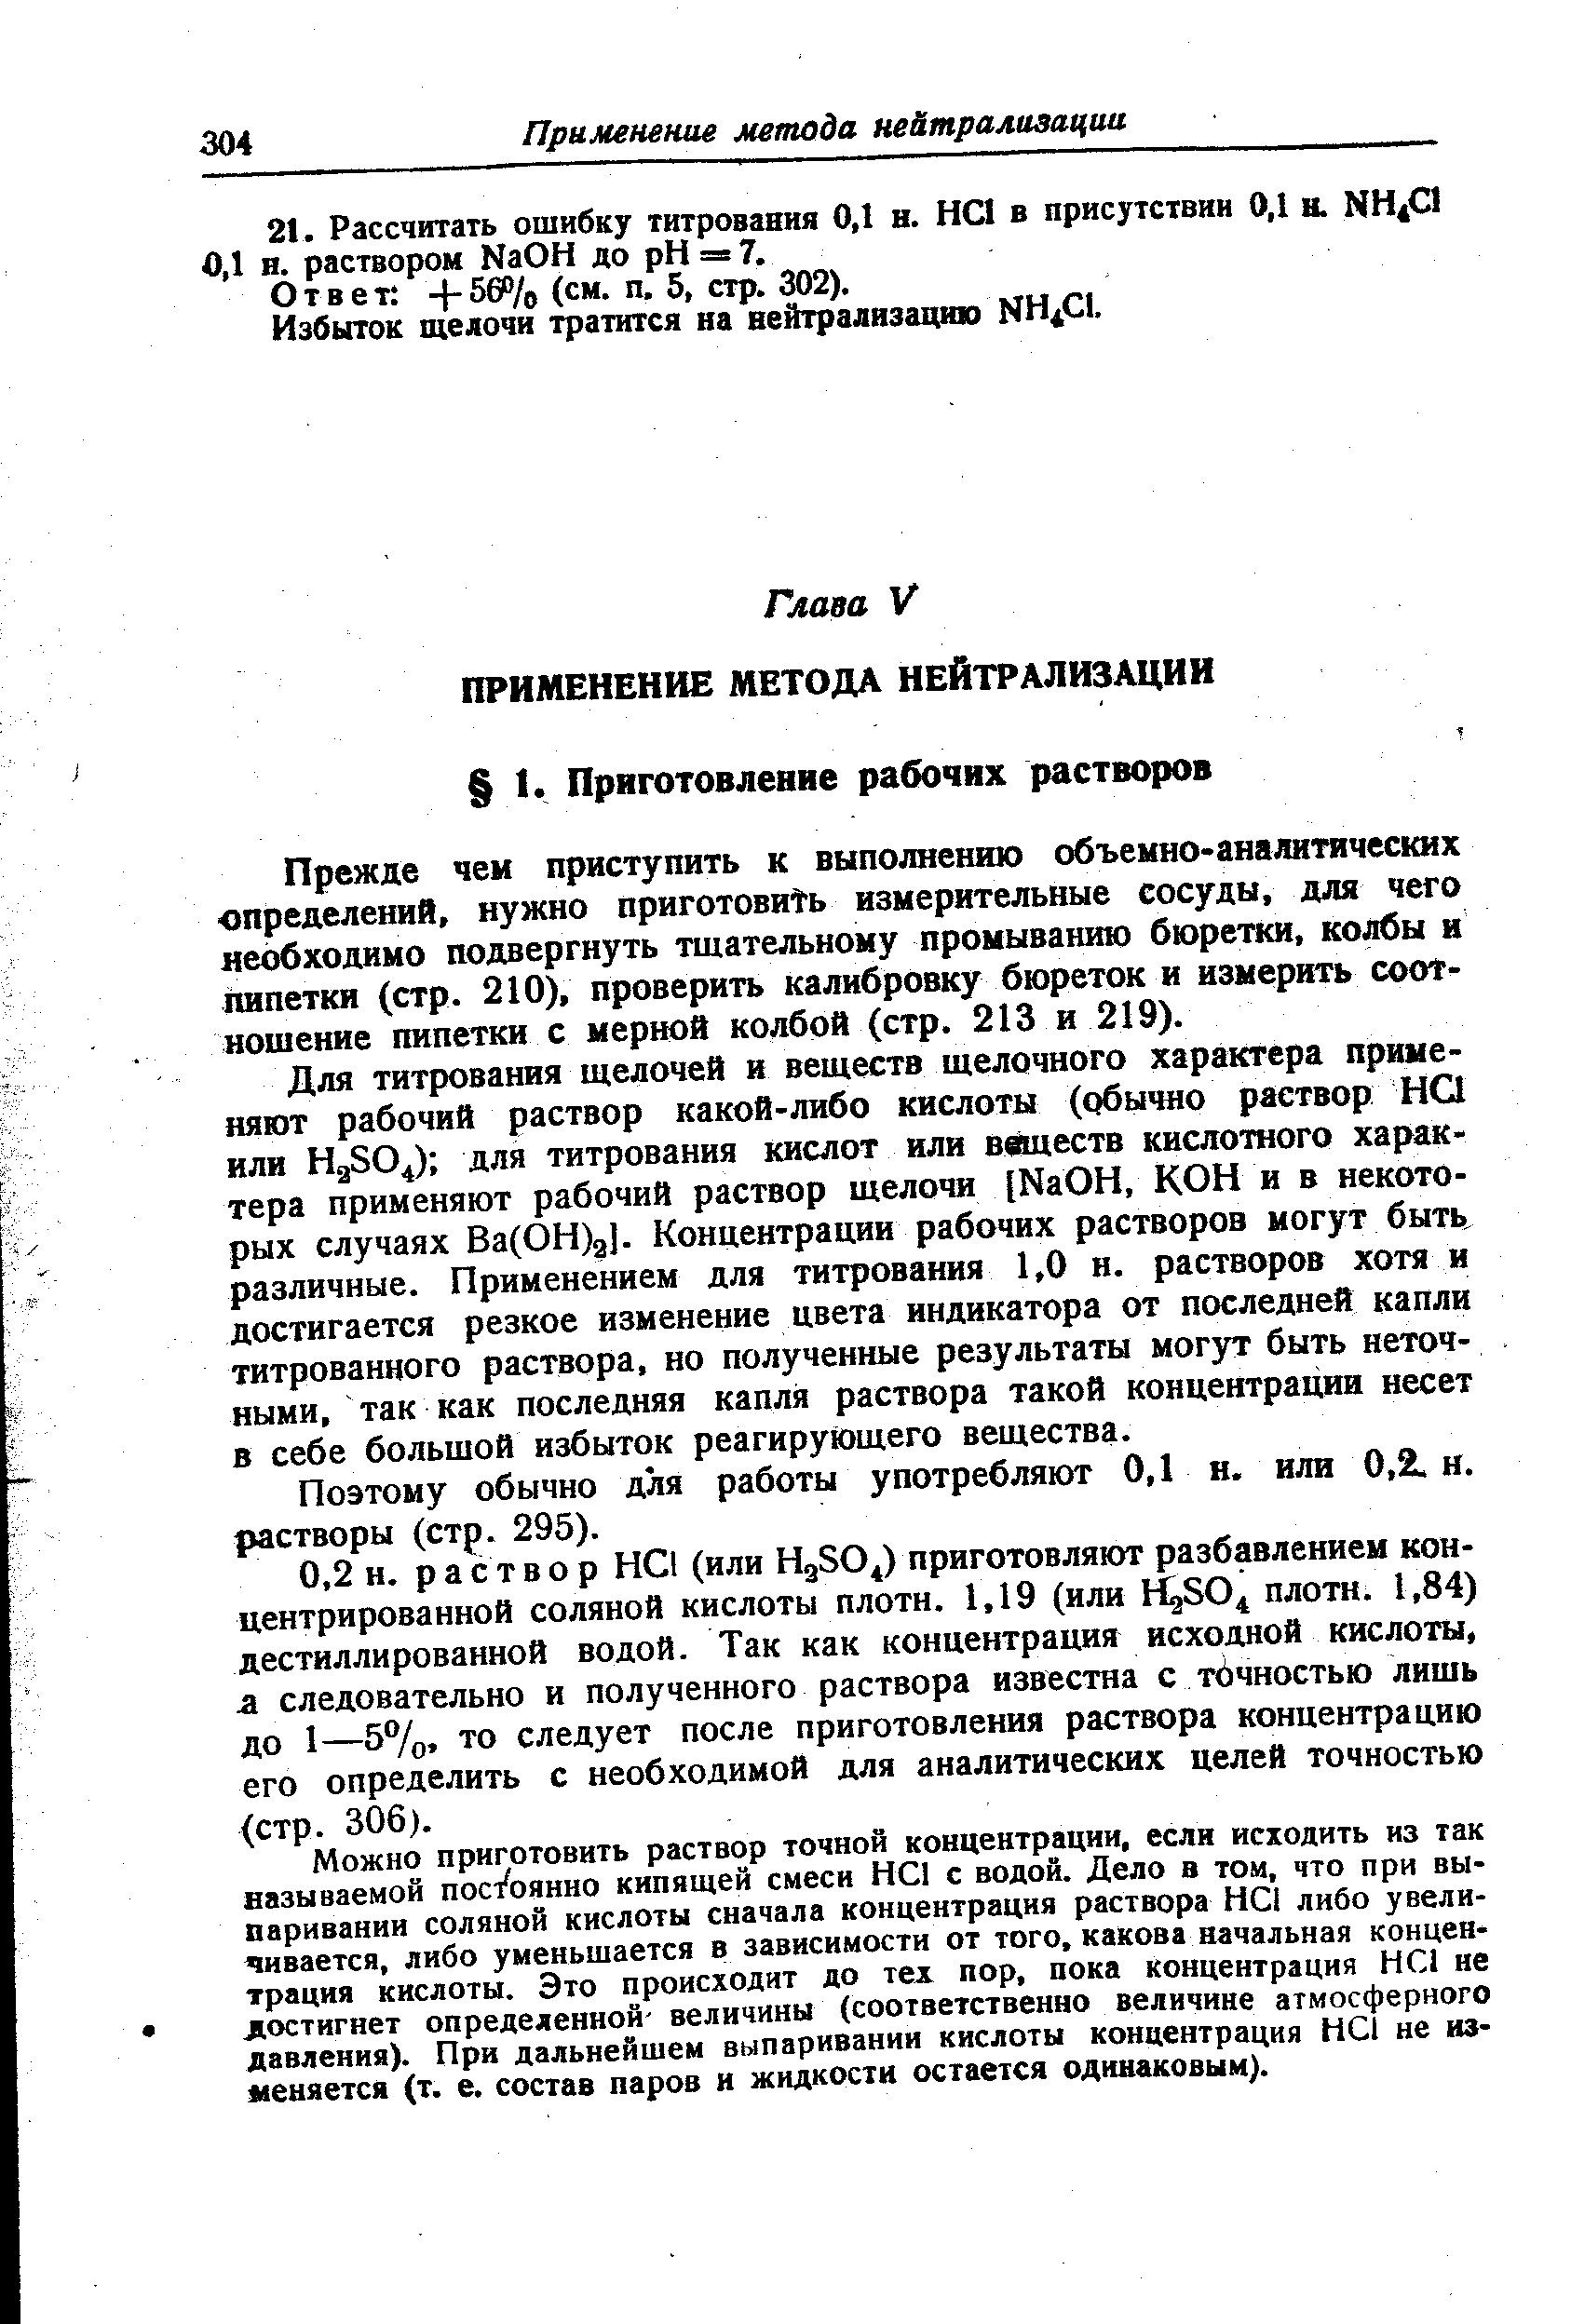 Ответ -f-560/o (см. п, 5, стр. 302).